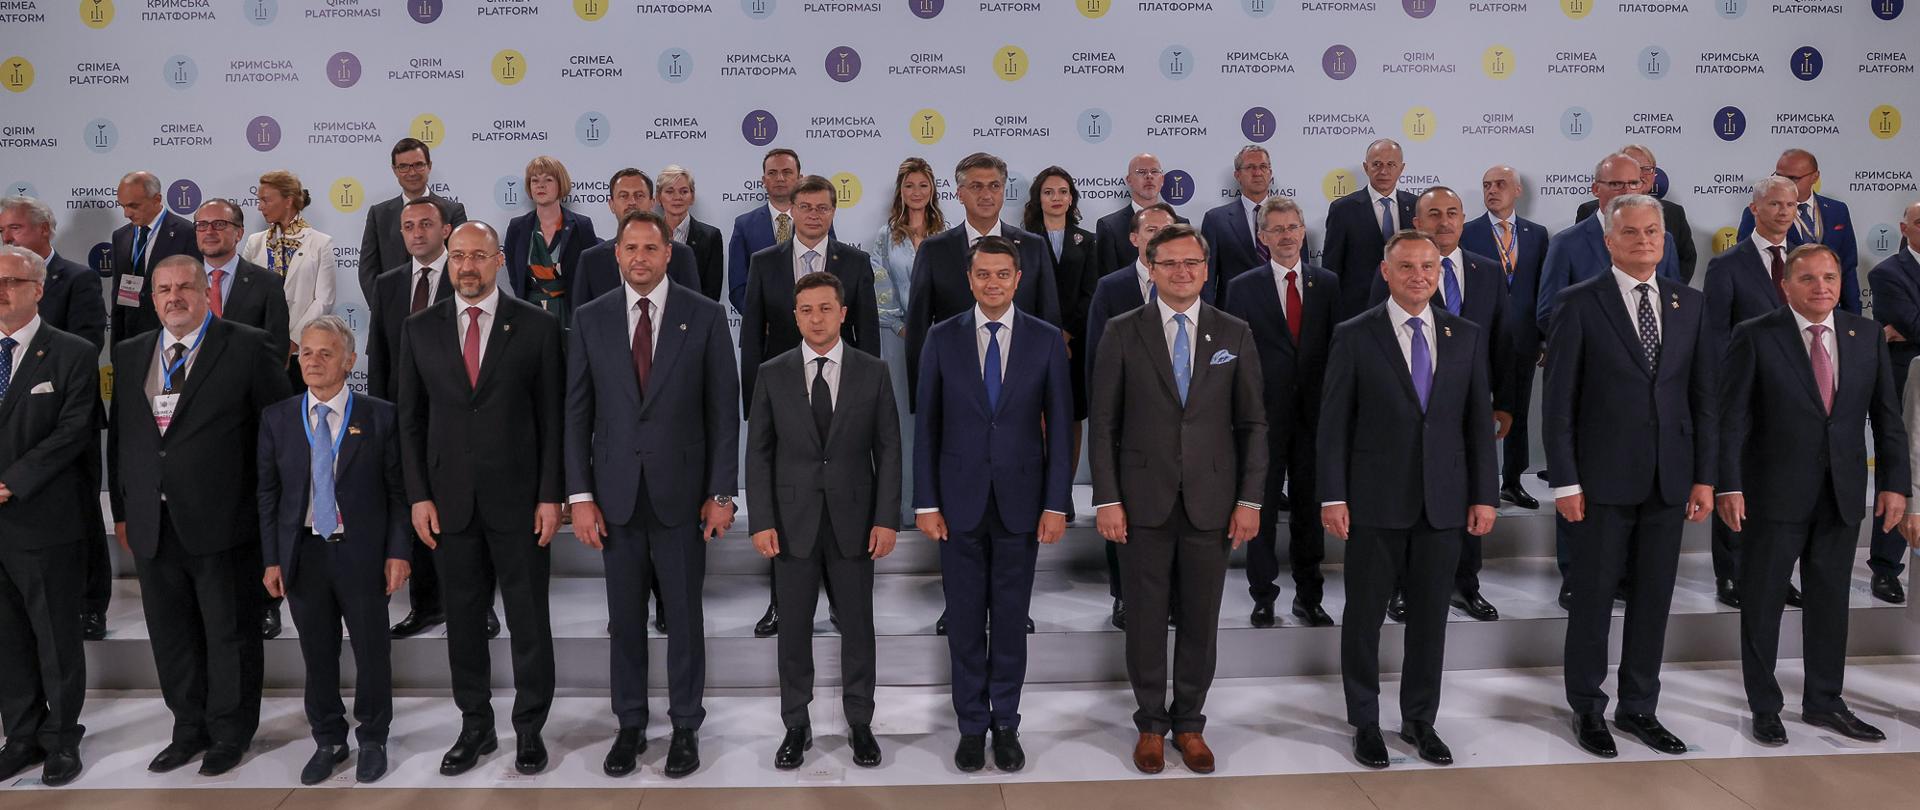 Inauguracyjny Szczyt Platformy Krymskiej w Kijowie